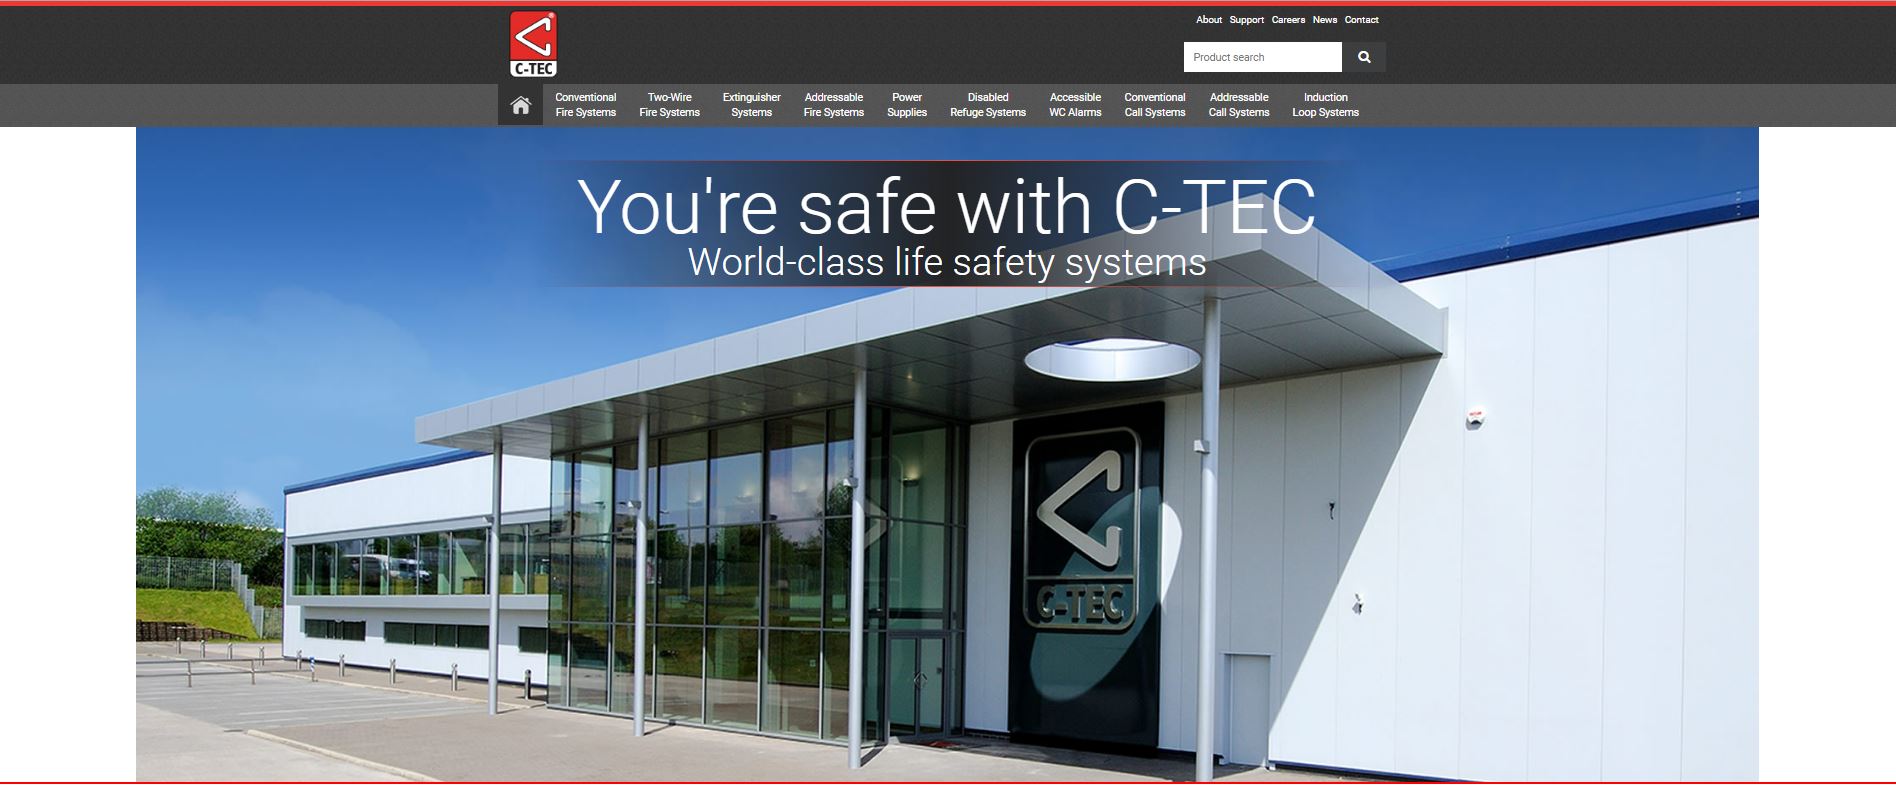 c-tec website launch